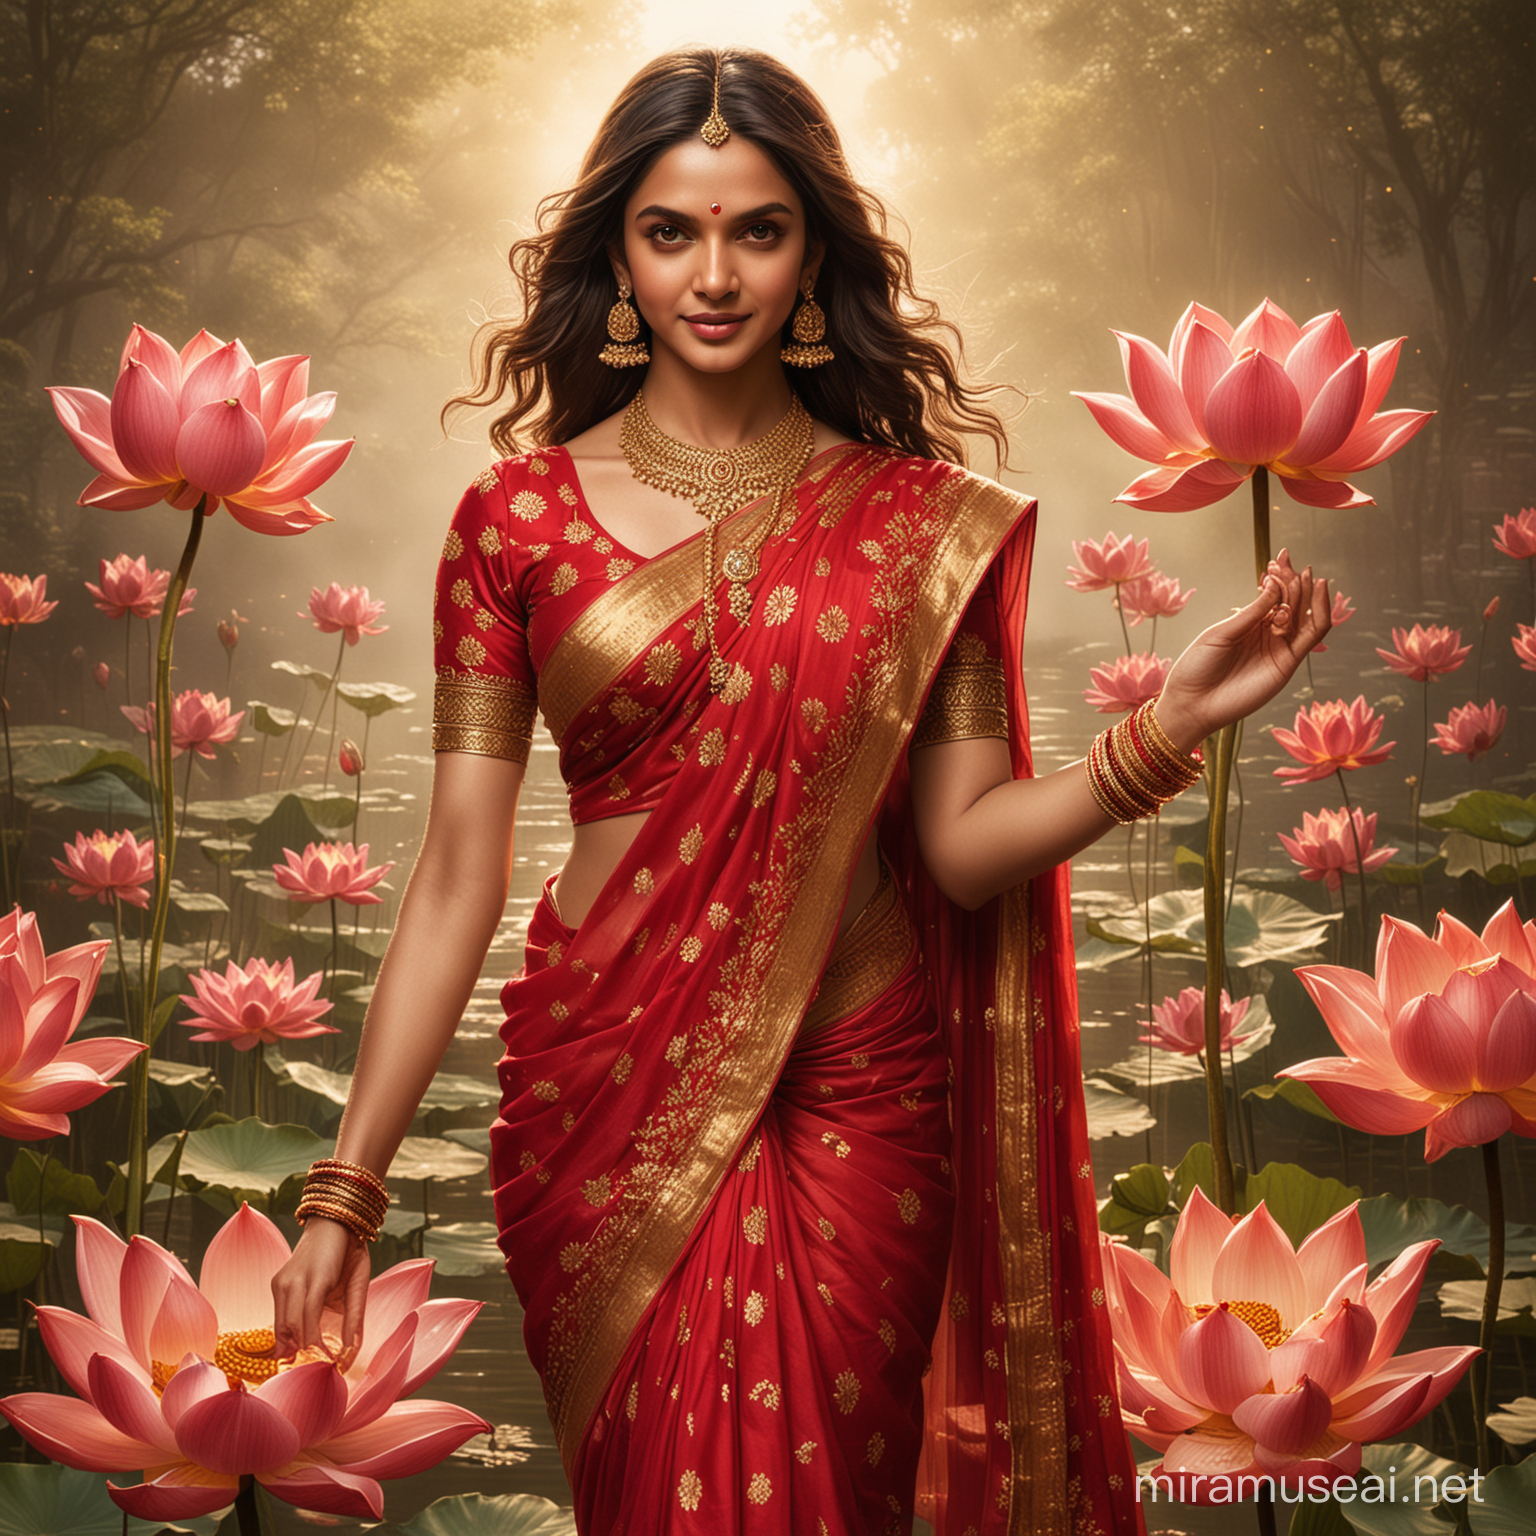 Deepika Padukone as Lakshmi Divine portrayal in a red sari with lotus symbolism